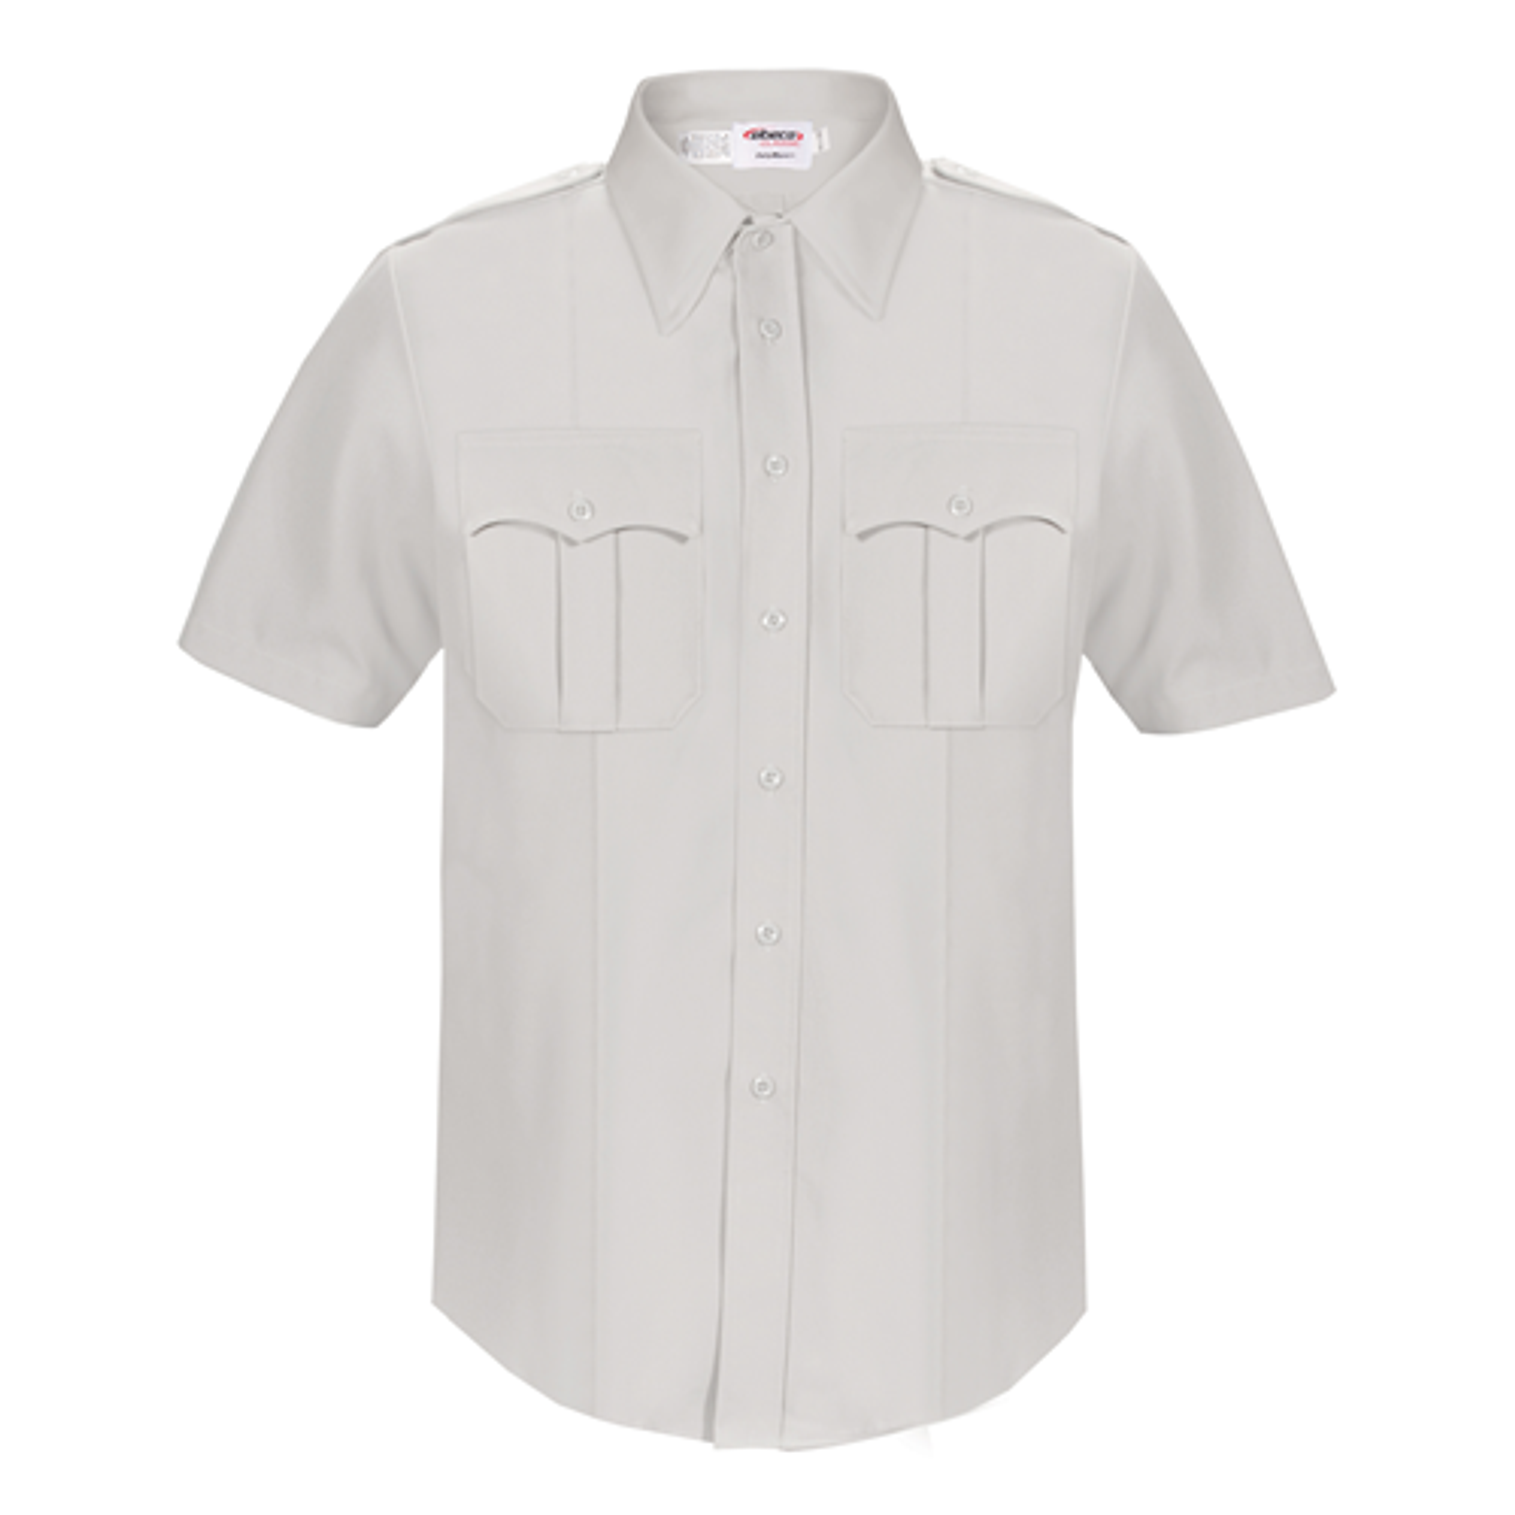 Dutymaxx Short Sleeve Shirt - KRELB-5580D-16.5